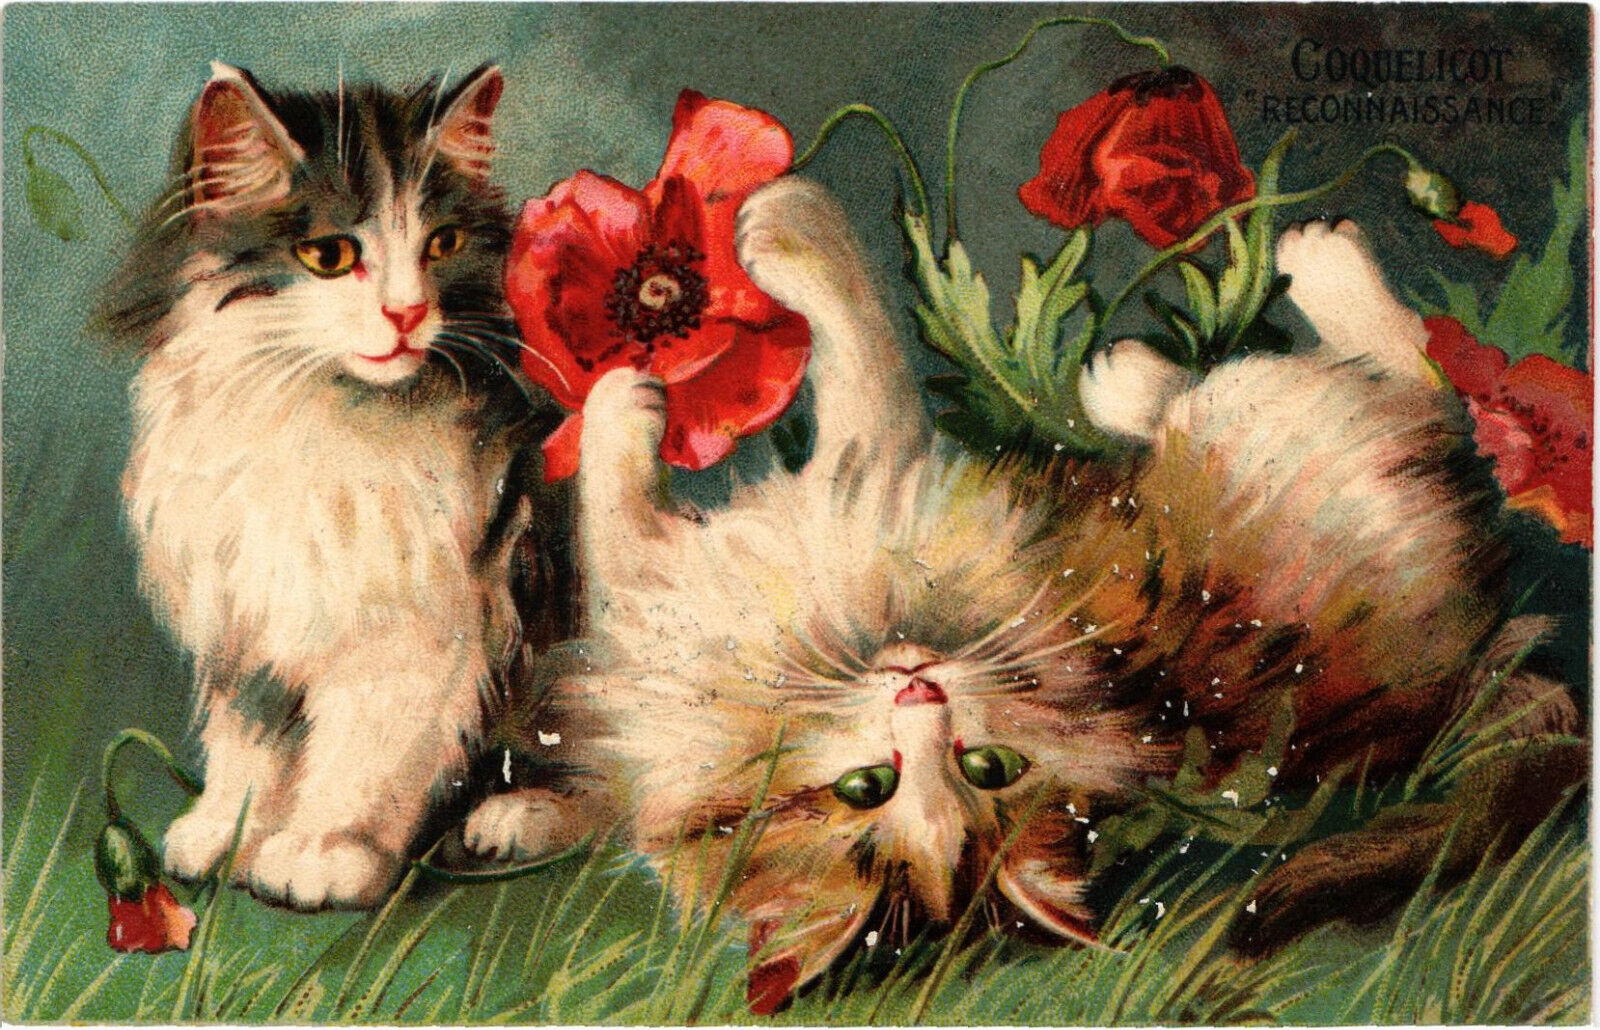 PC CATS, ARTIST SIGNED, BOULANGER, RECONAISSANCE, Vintage Postcard (b47416)